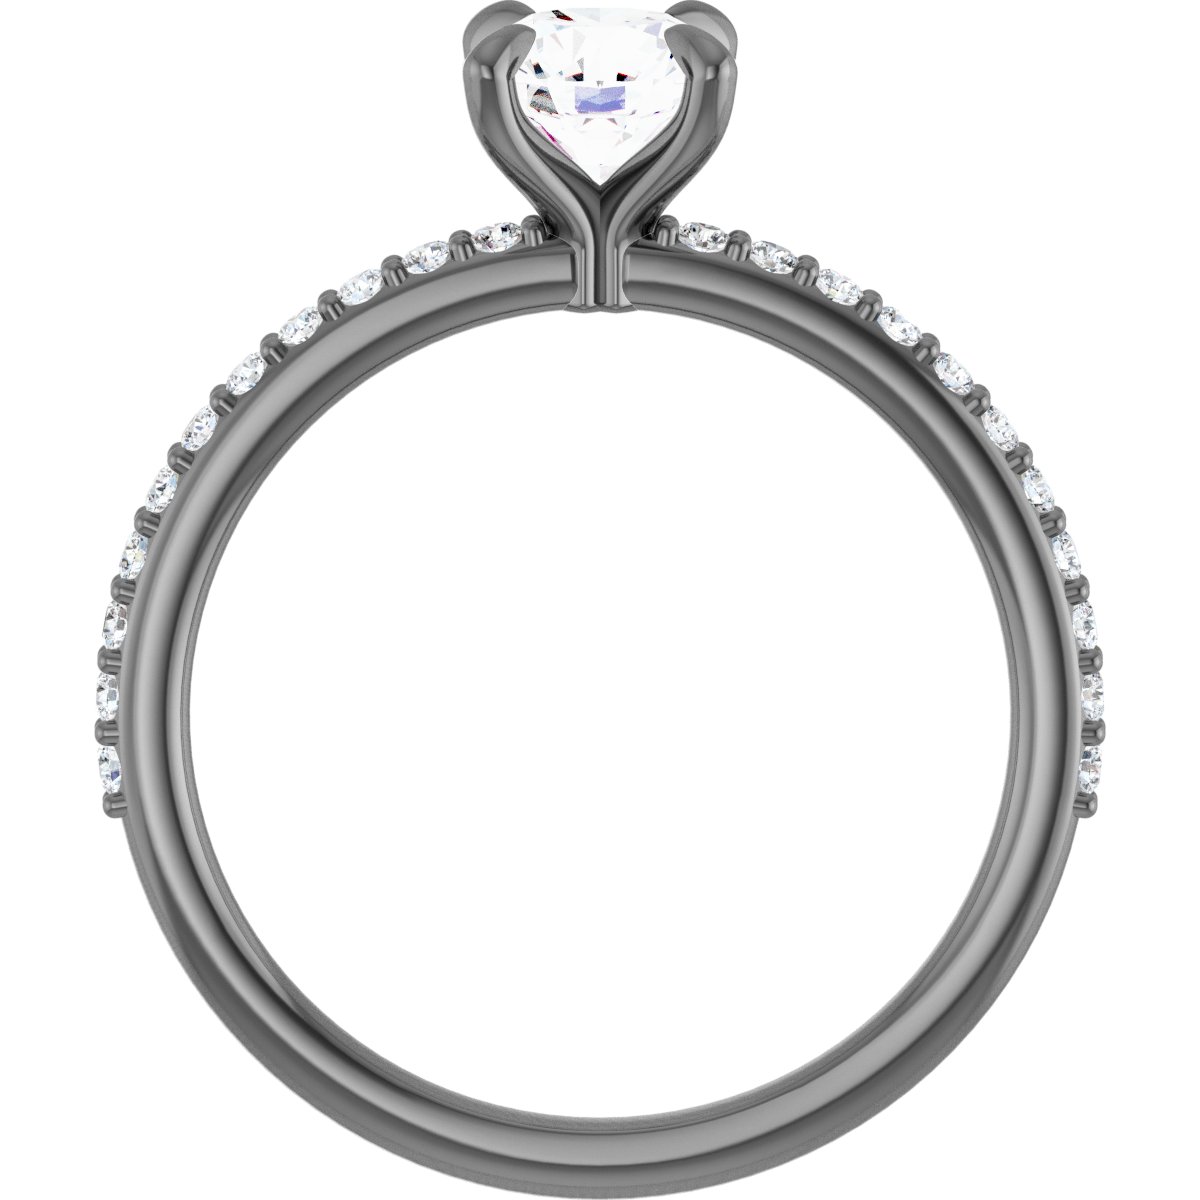 14K White 6 mm Round Forever One™ Moissanite & 1/5 CTW Diamond Engagement Ring